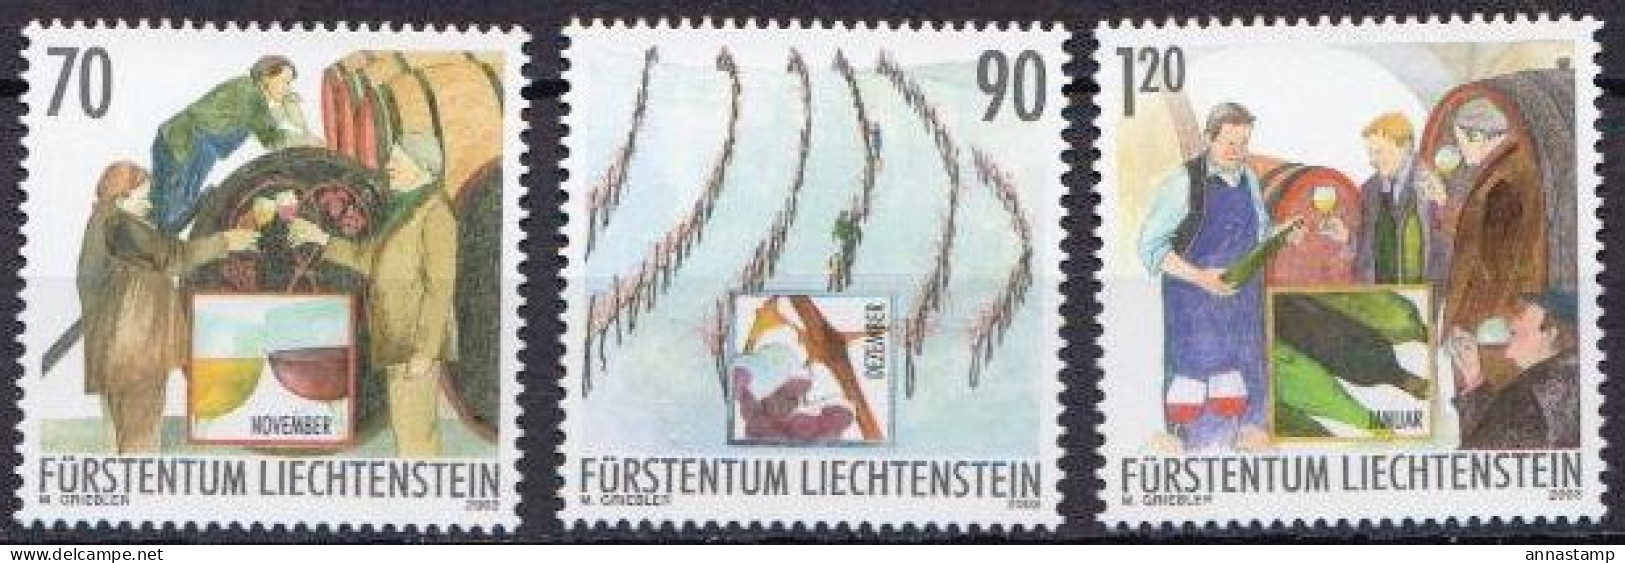 Liechtenstein MNH Sets - Fruit